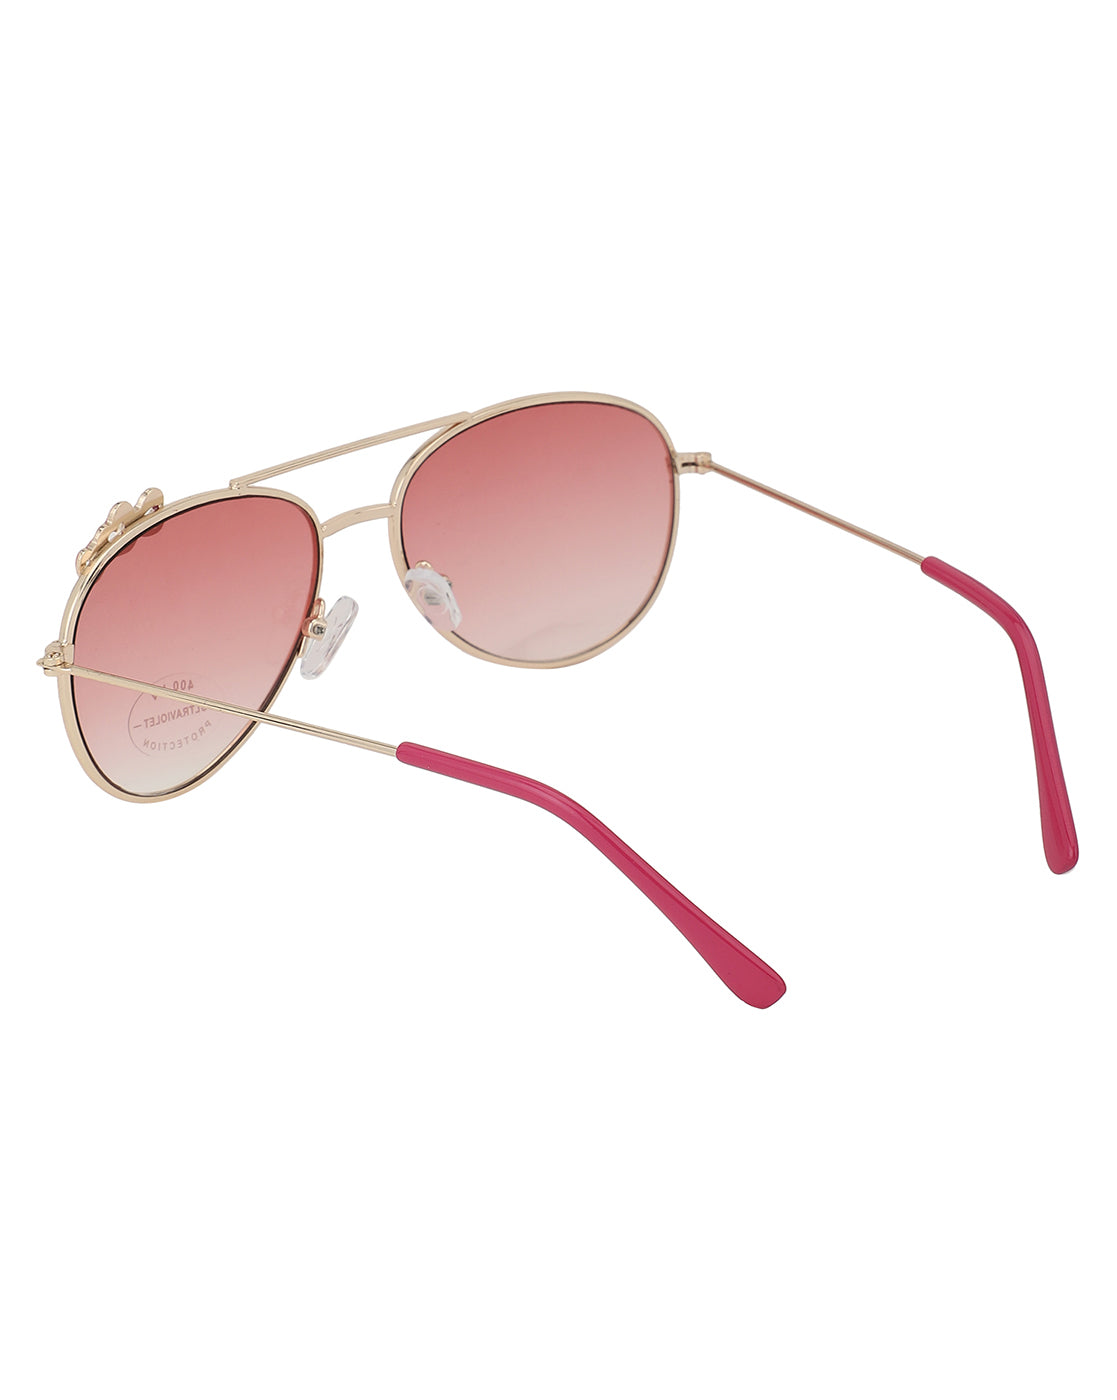 Carlton London Pink Lens &amp; Gold-Toned Aviator Sunglasses Uv Protected Lens For Girl